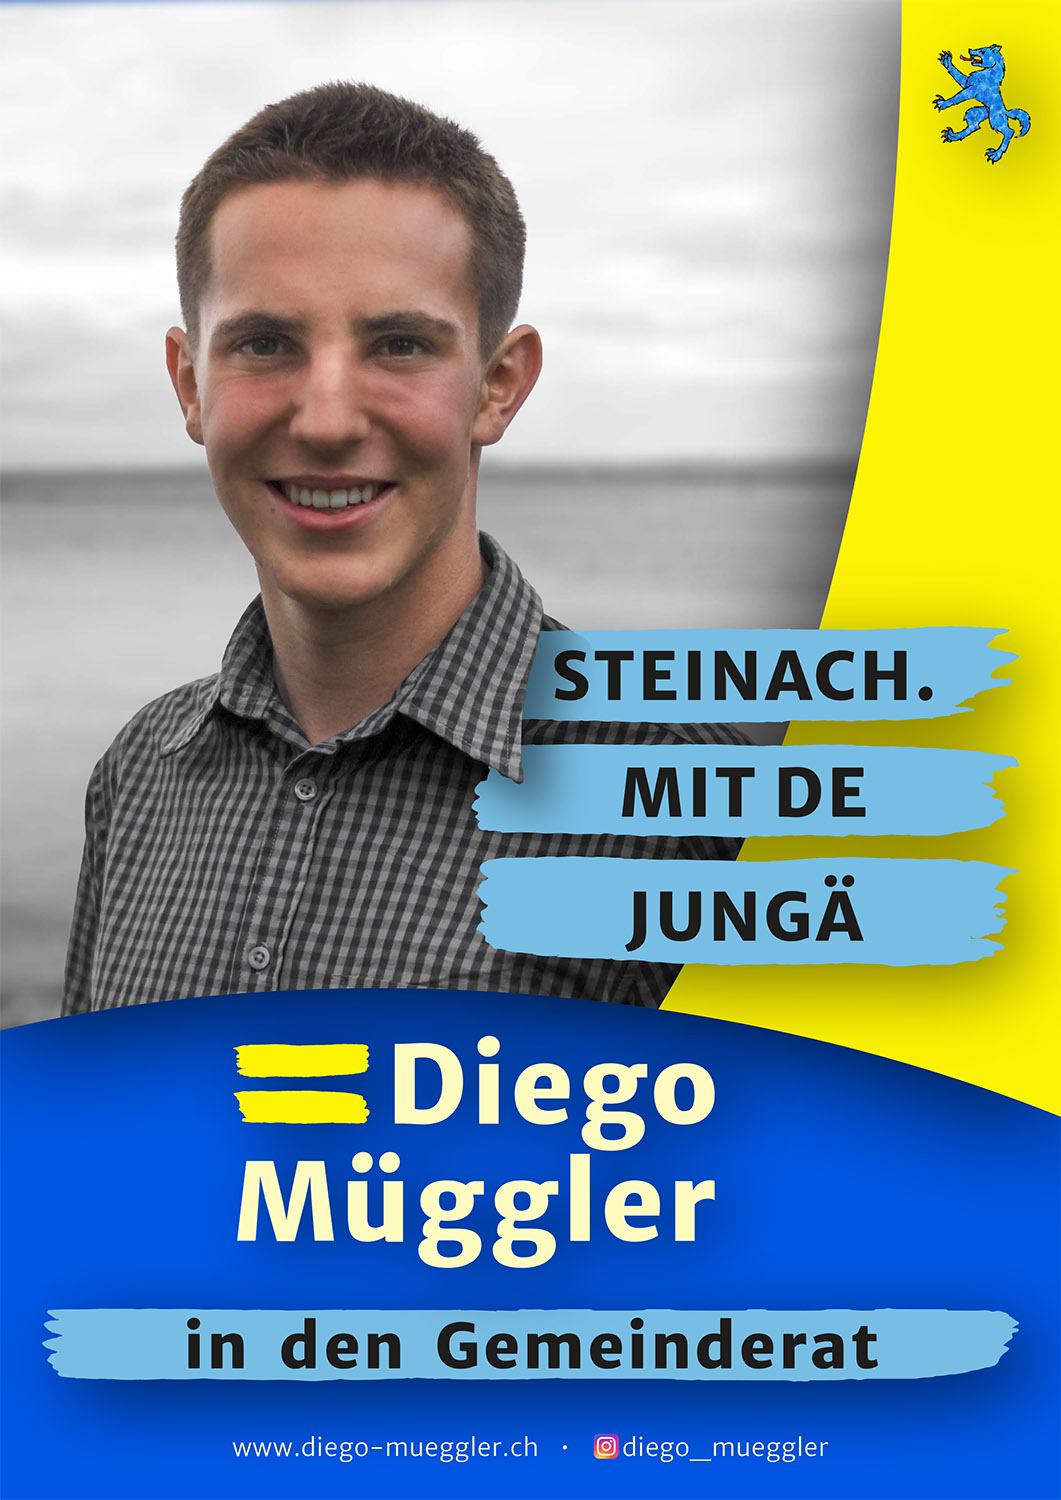 Diego Gemeinderat Plakat A4